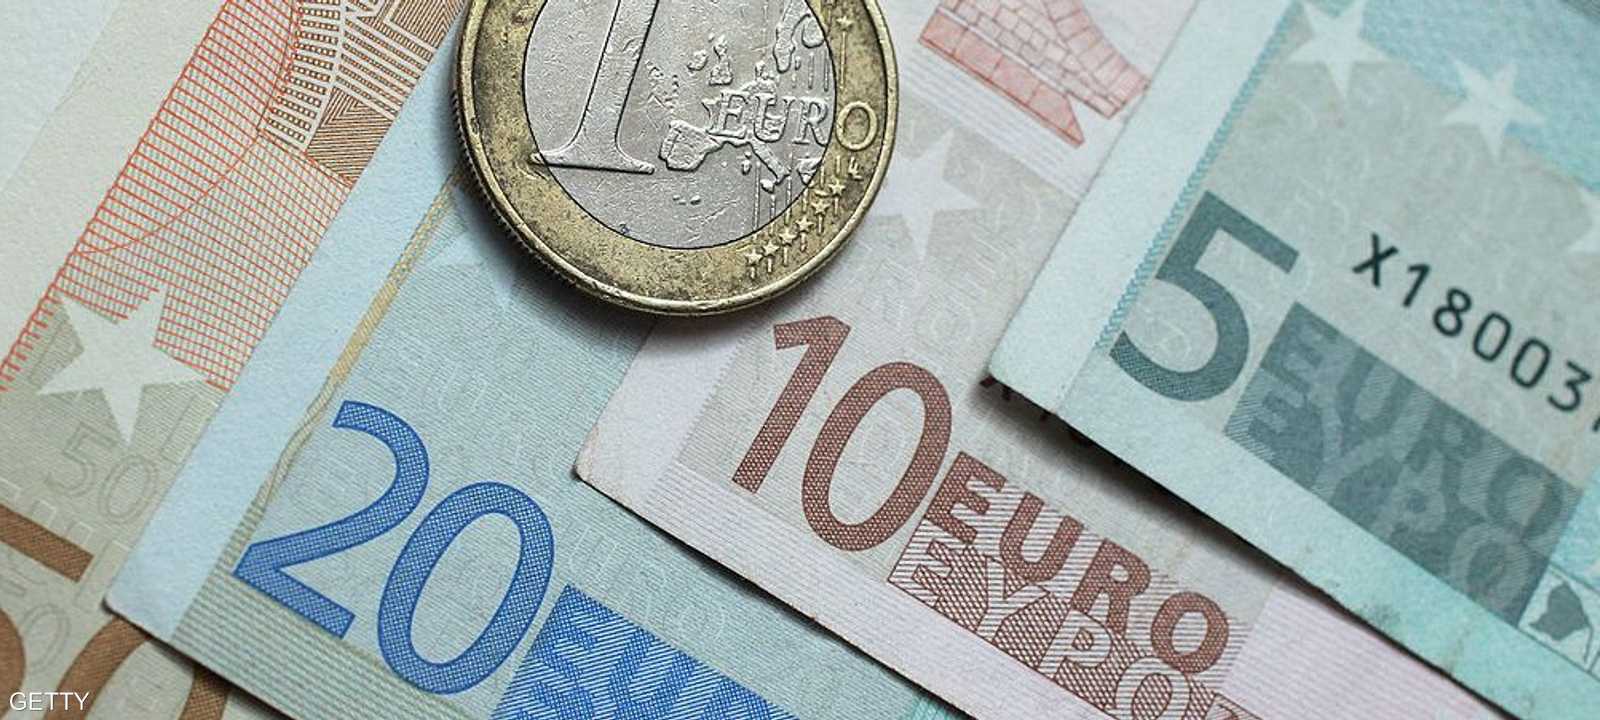 اليورو يقفز إلى أعلى مستوى في 4 أشهر